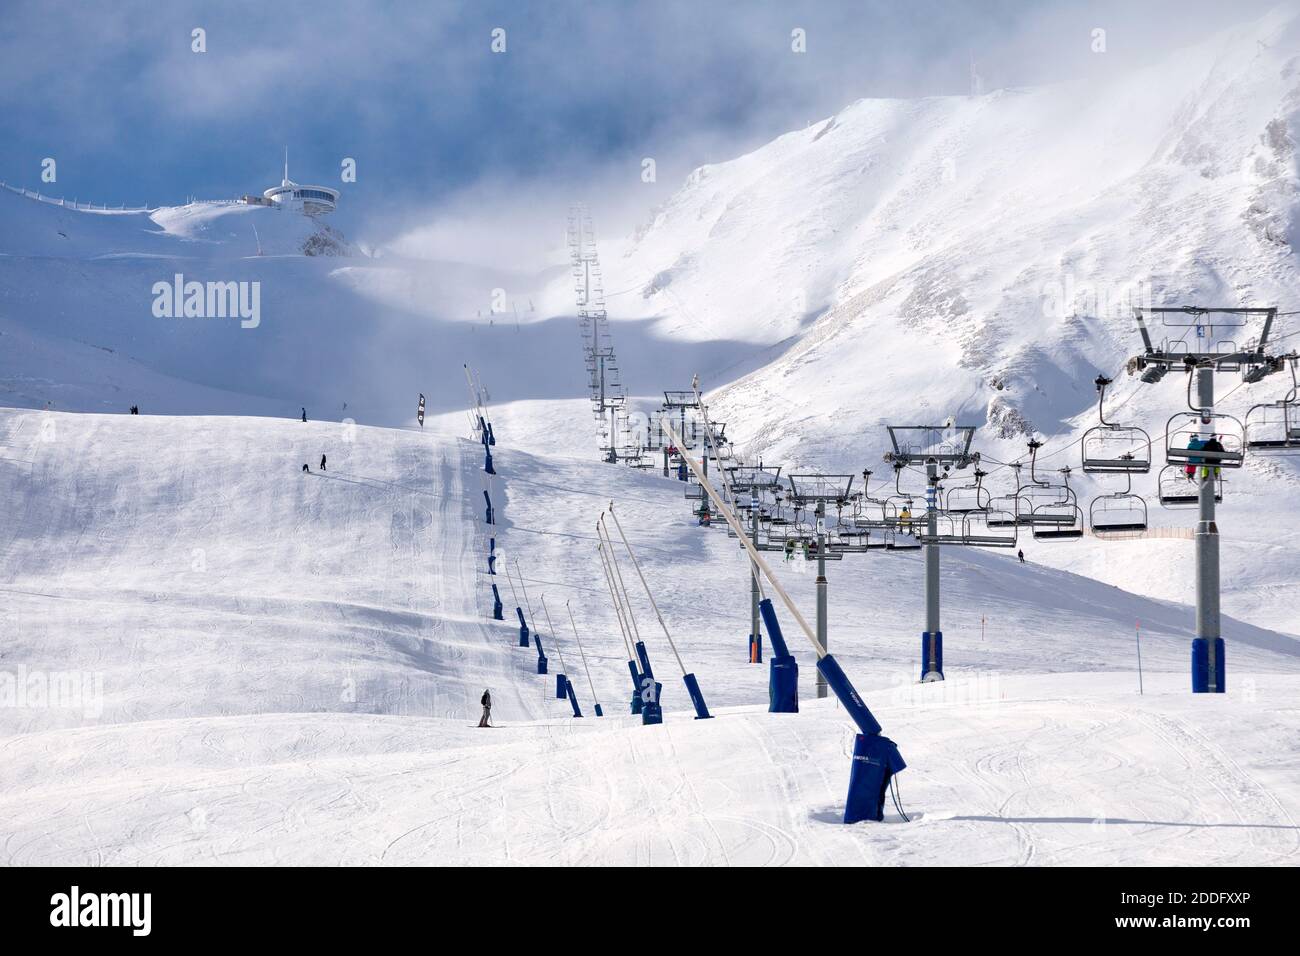 Pas de la Casa, Andorra, Dezember 02 2019: Fast leerer Skilift, der auf den Gipfel des schneebedeckten Berges geht, der in der Wolke verloren ist. Stockfoto